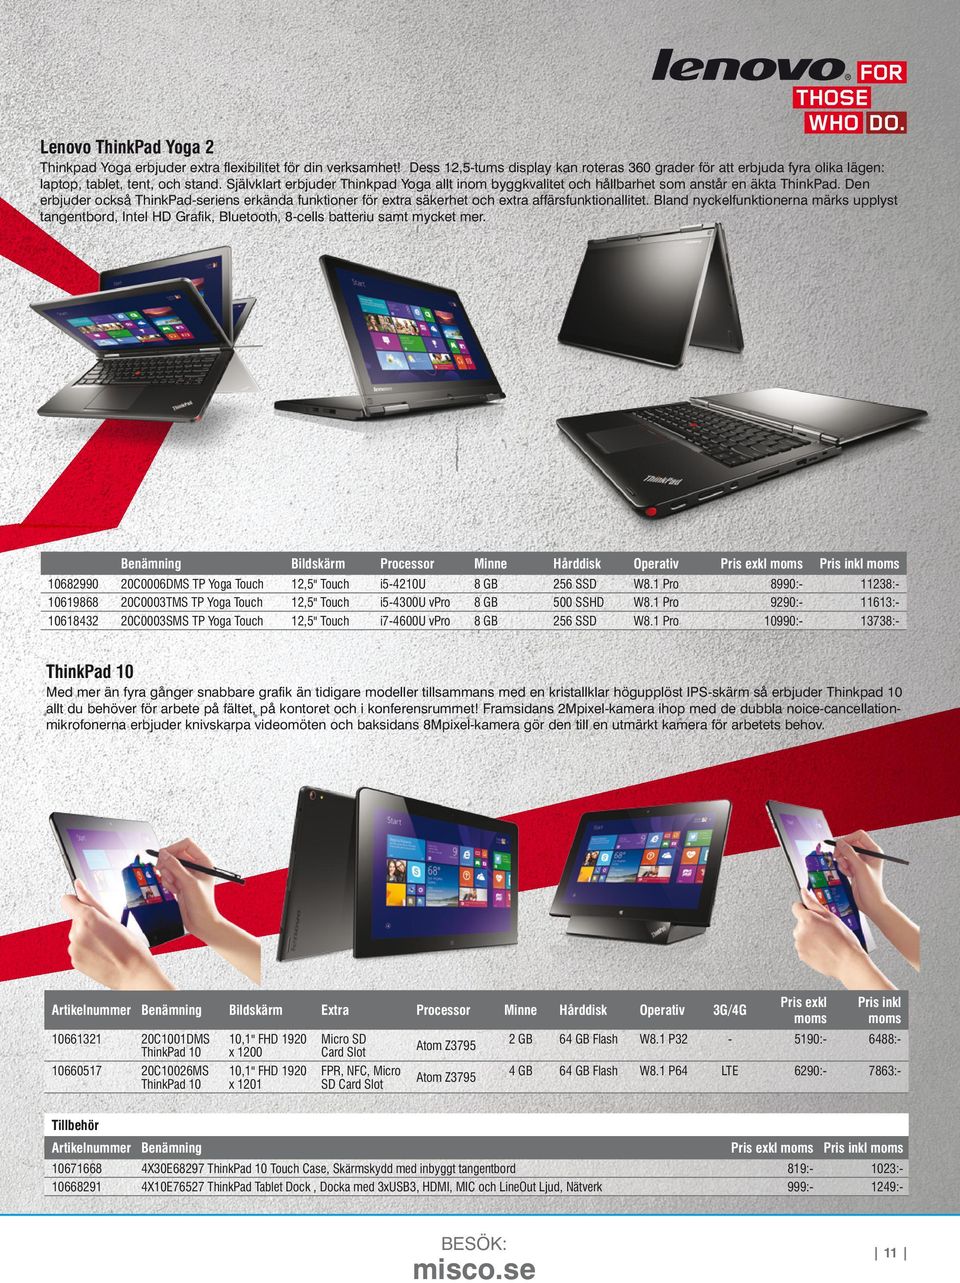 Den erbjuder också ThinkPad-seriens erkända funktioner för extra säkerhet och extra affärsfunktionallitet.